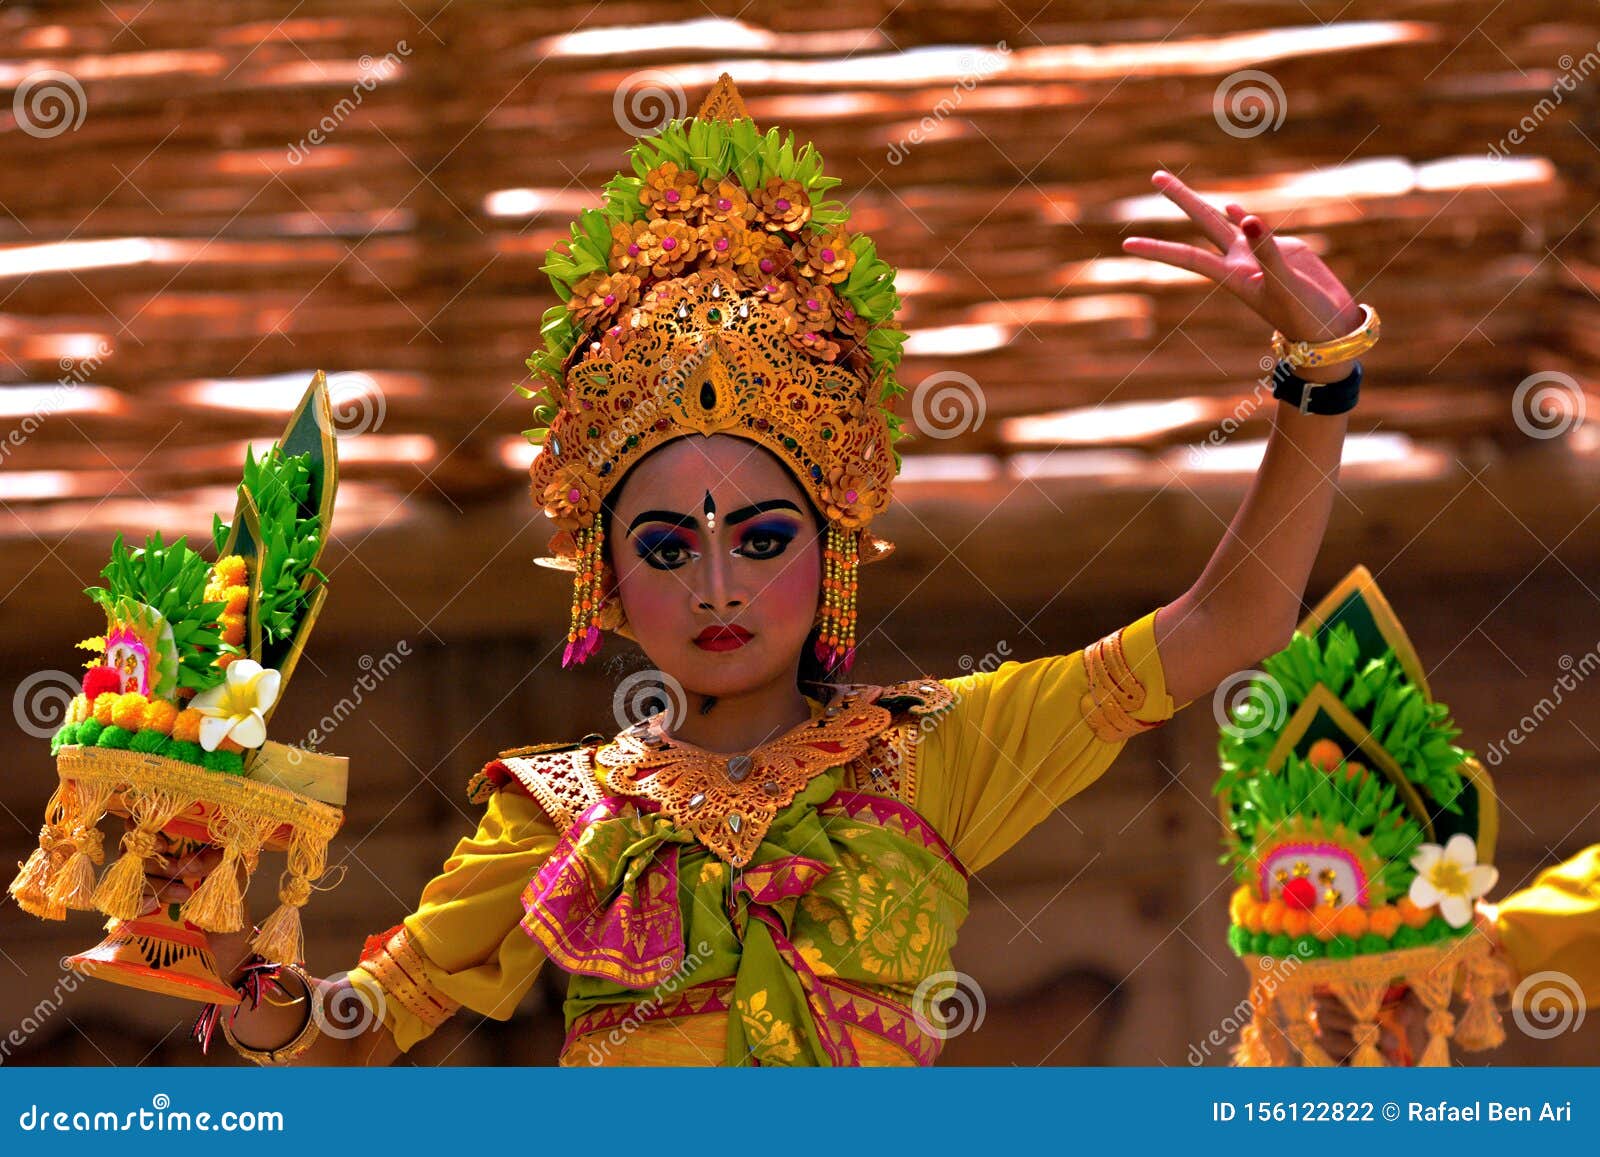 Balinese Woman Dancing Tari  Pendet Dance In Bali  Indonesia 